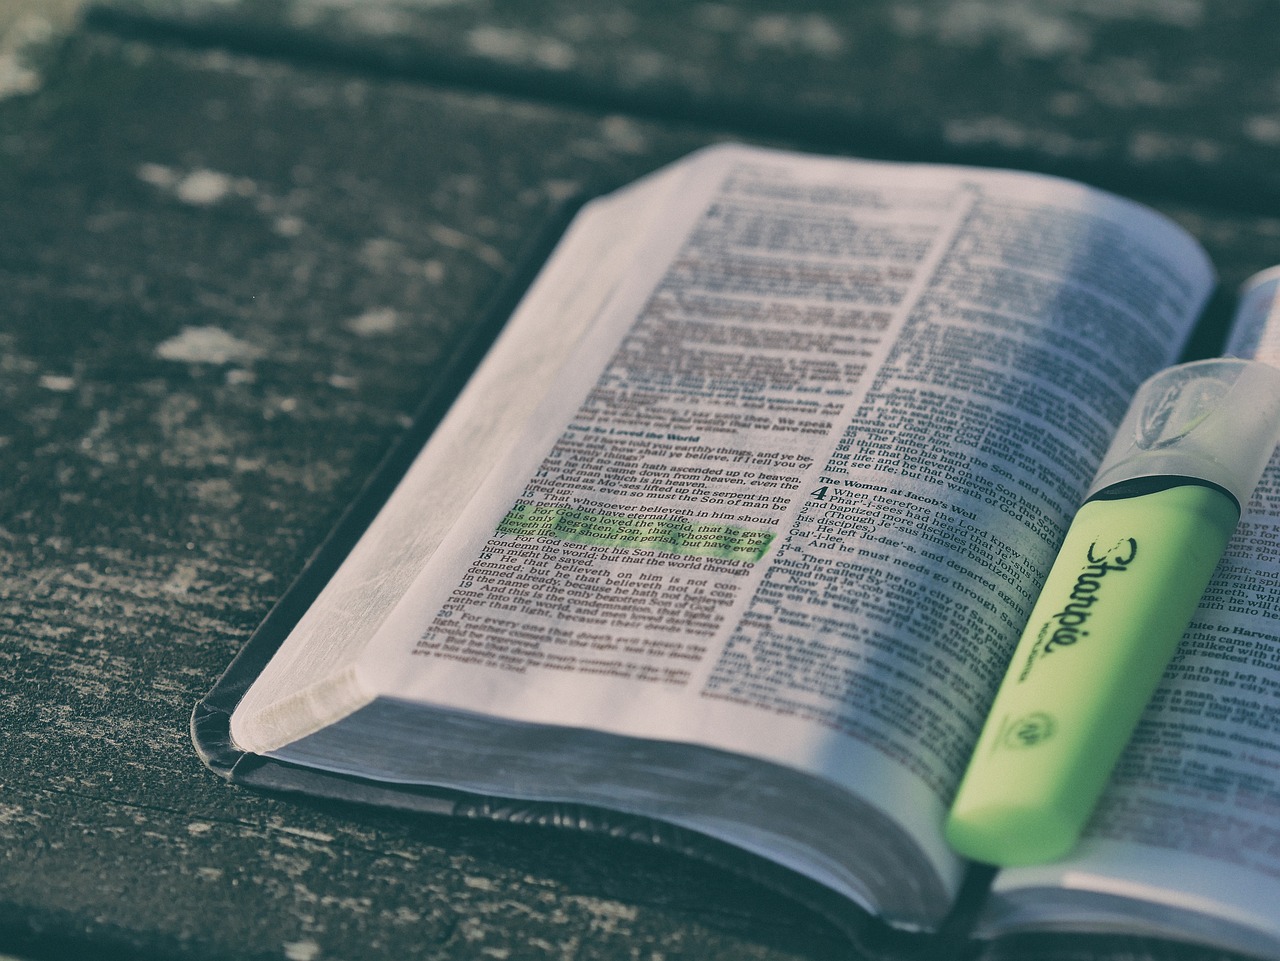 Salmos 30: A imagem mostra uma Bíblia aberta, marcada de verde por um marca texto. 